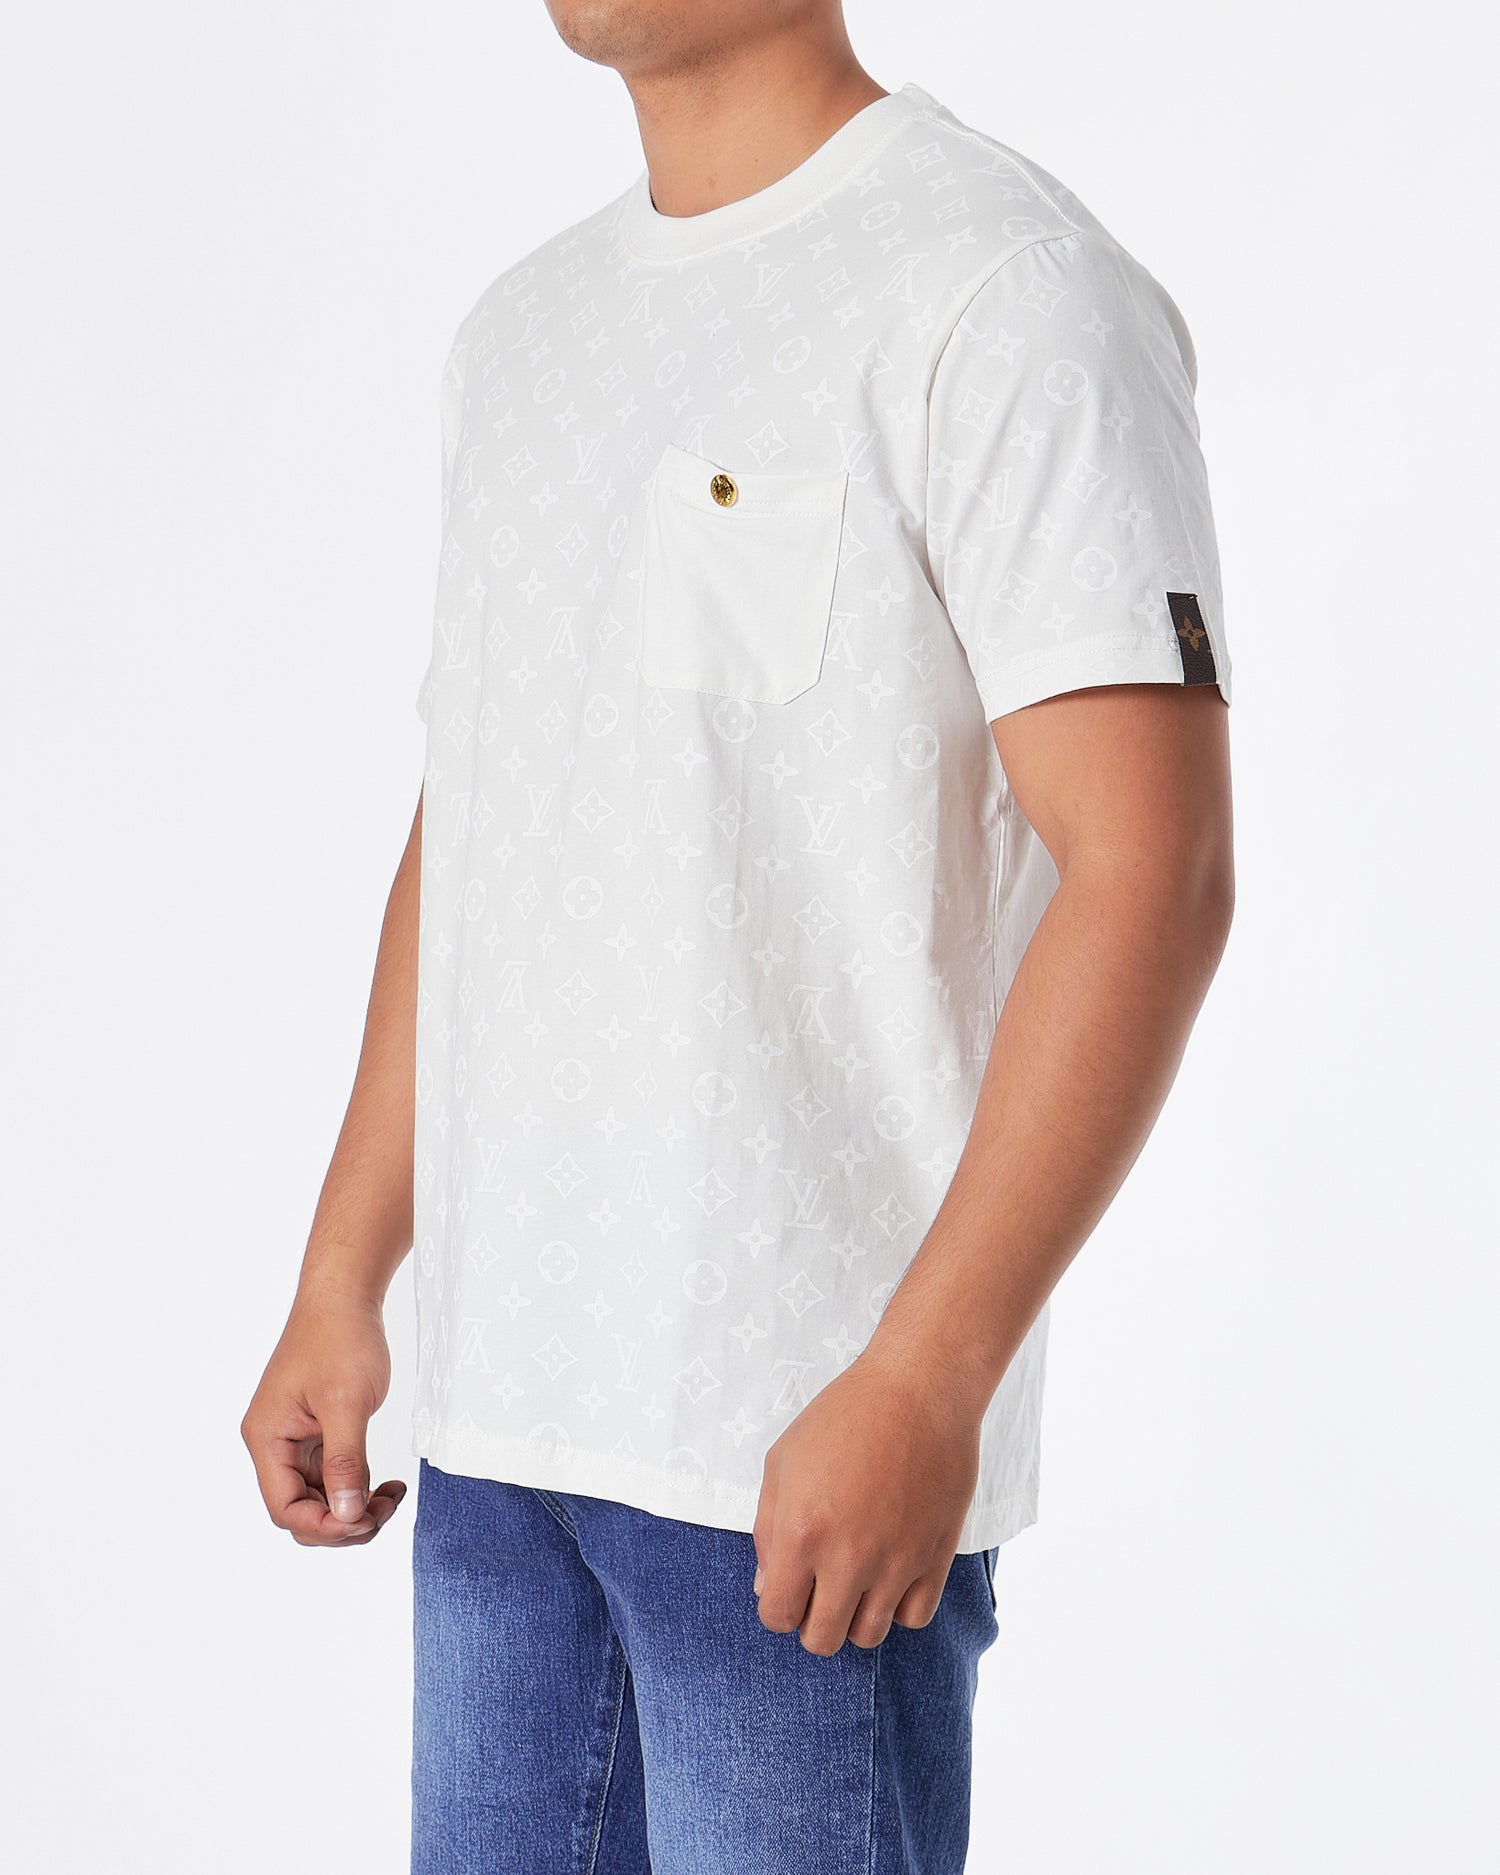 LV Monogram Over Printed Men White  T-Shirt 24.90